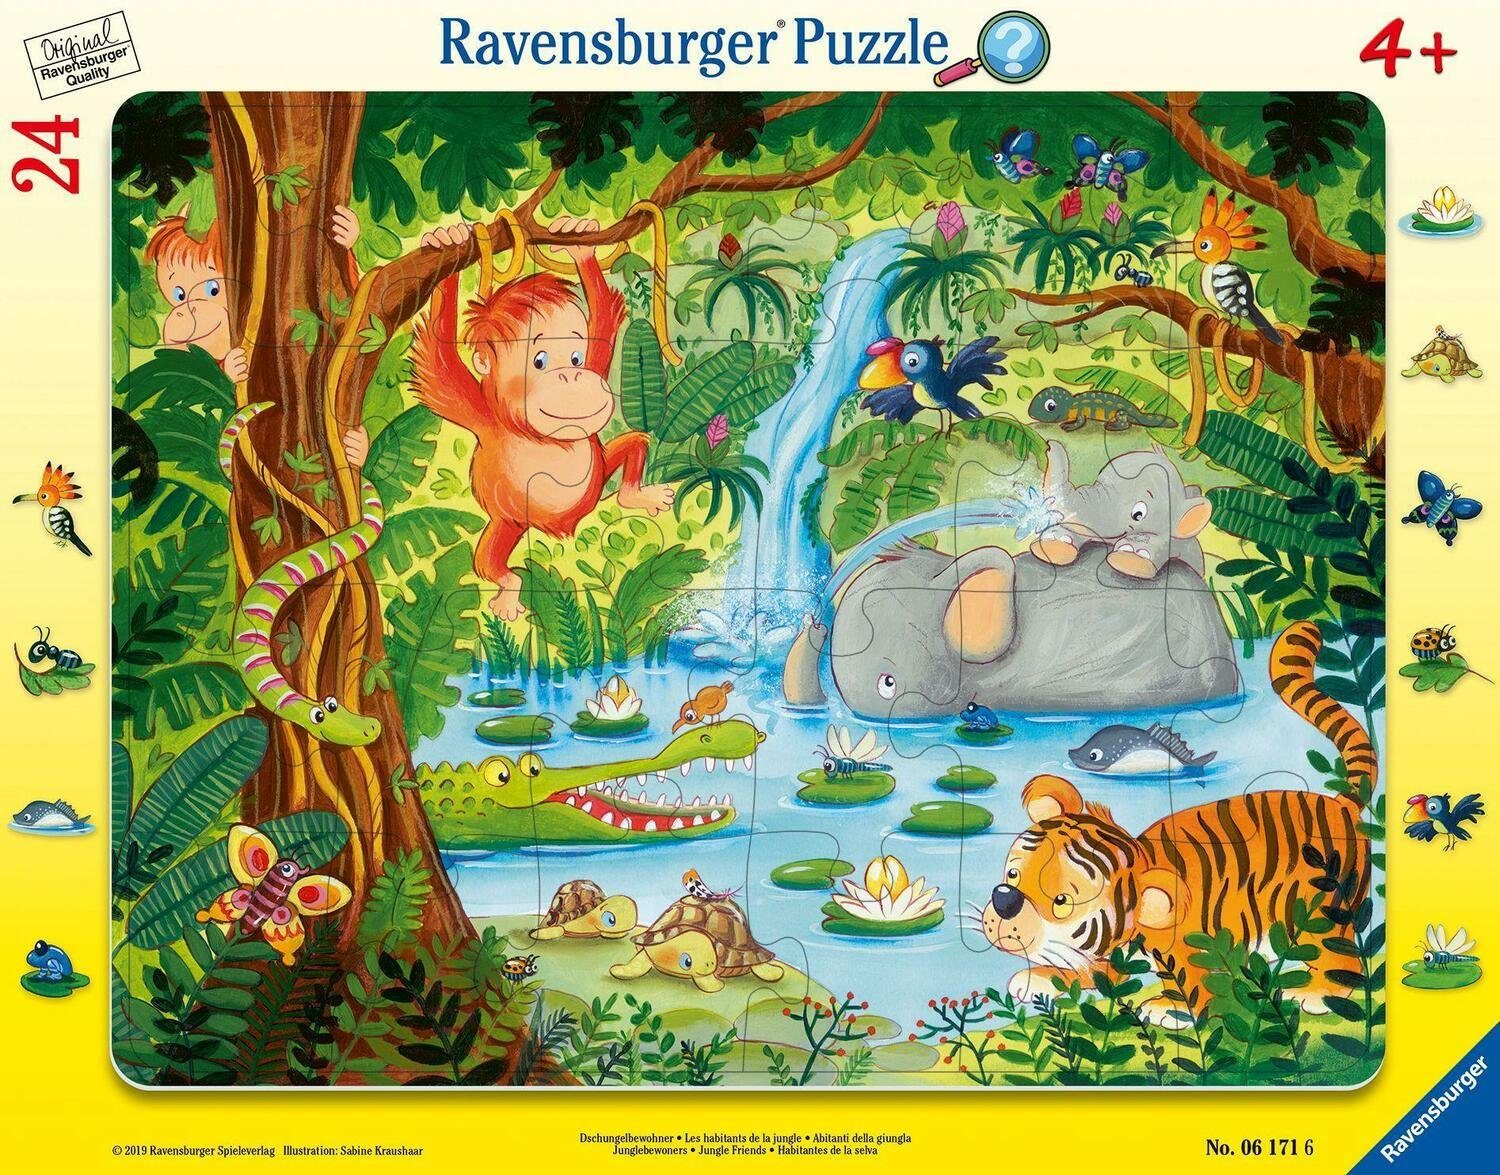 Ravensburger Puzzle Dschungelbewohner - Puzzle mit 24 Teilen, 24 Puzzleteile